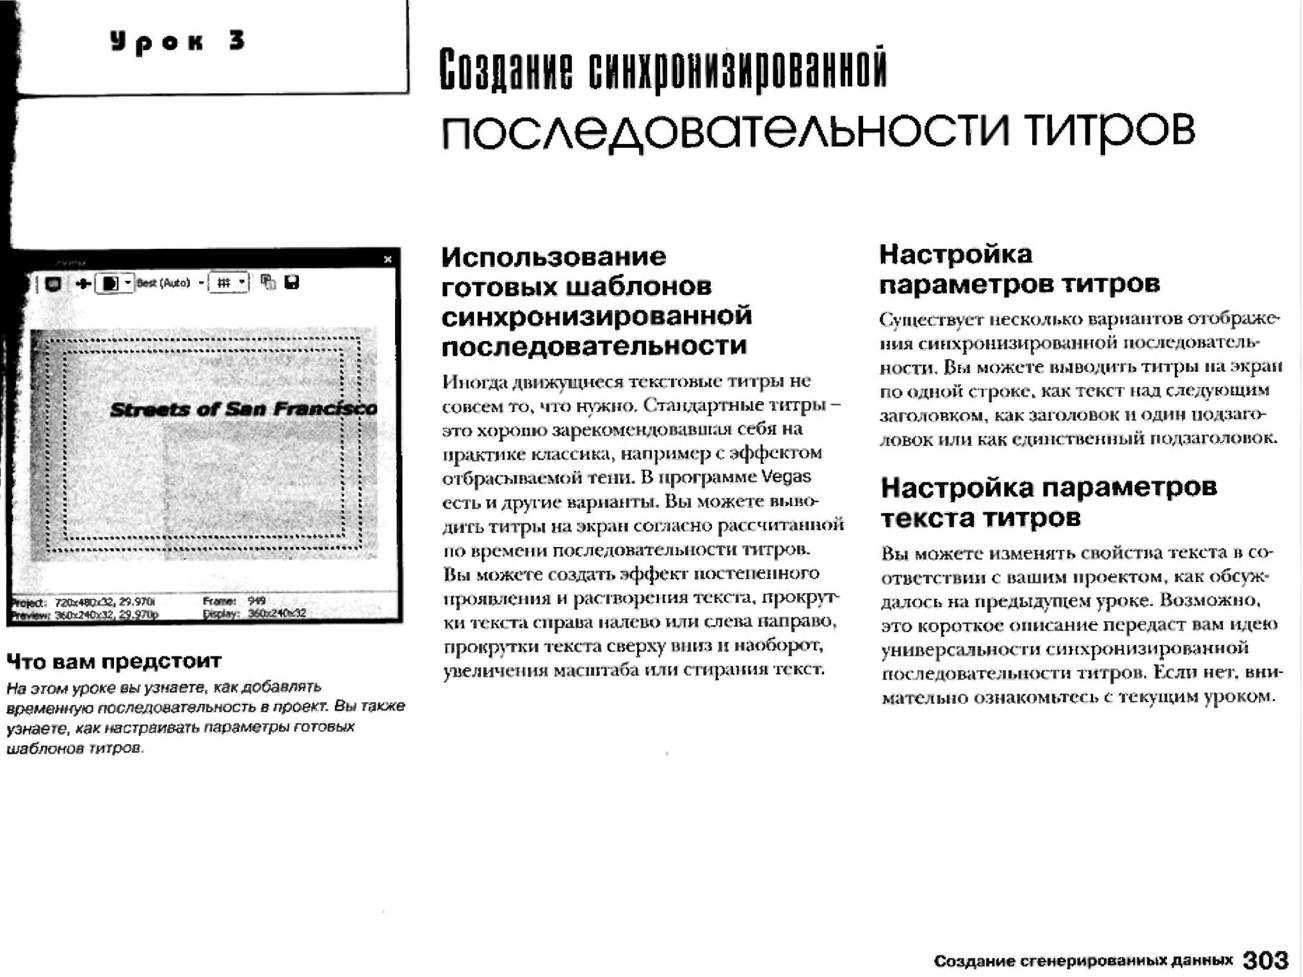 http://redaktori-uroki.3dn.ru/_ph/12/322897647.jpg